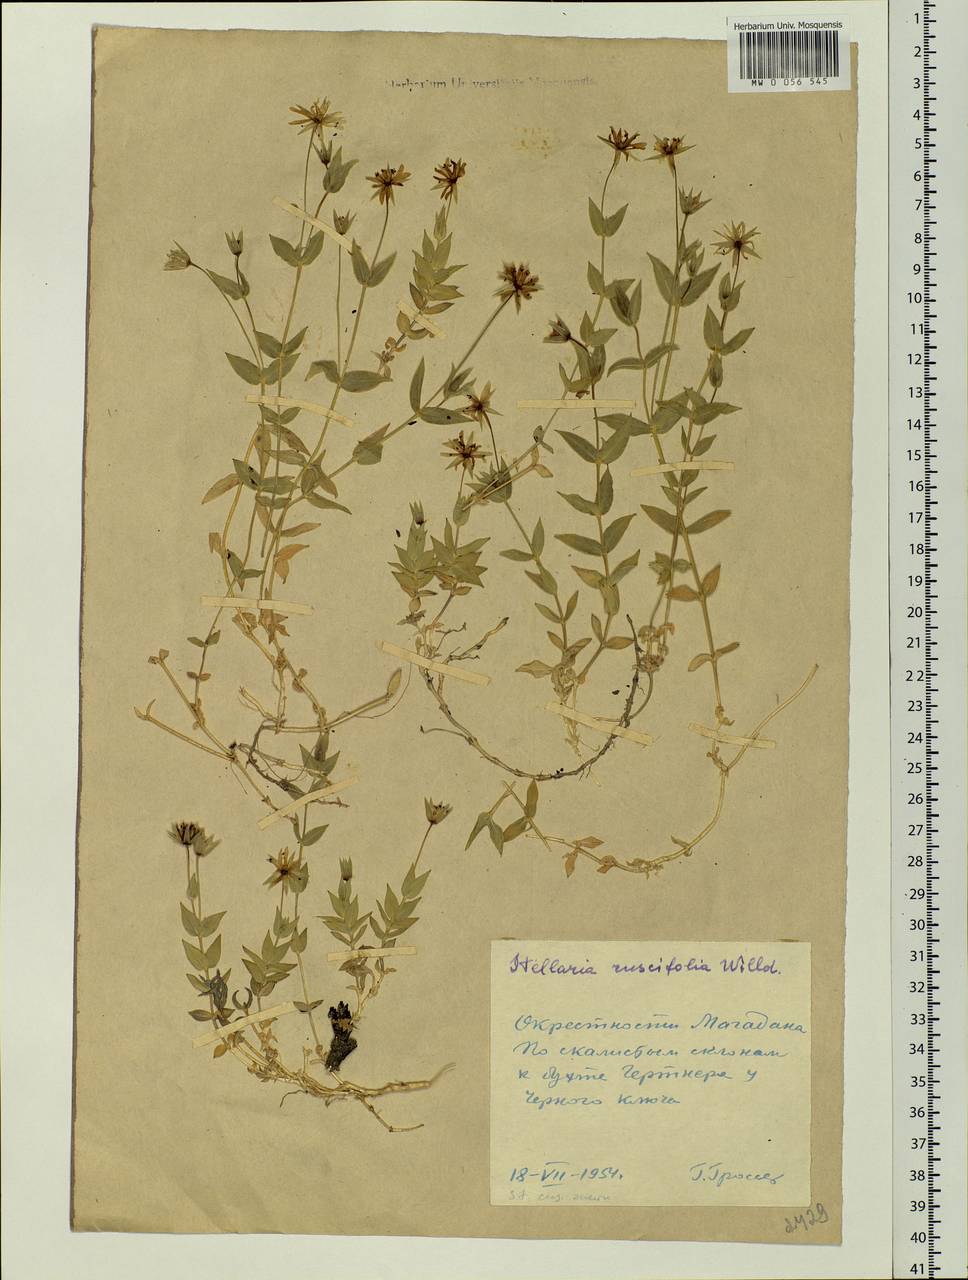 Stellaria ruscifolia Pall. ex Schltdl., Siberia, Chukotka & Kamchatka (S7) (Russia)